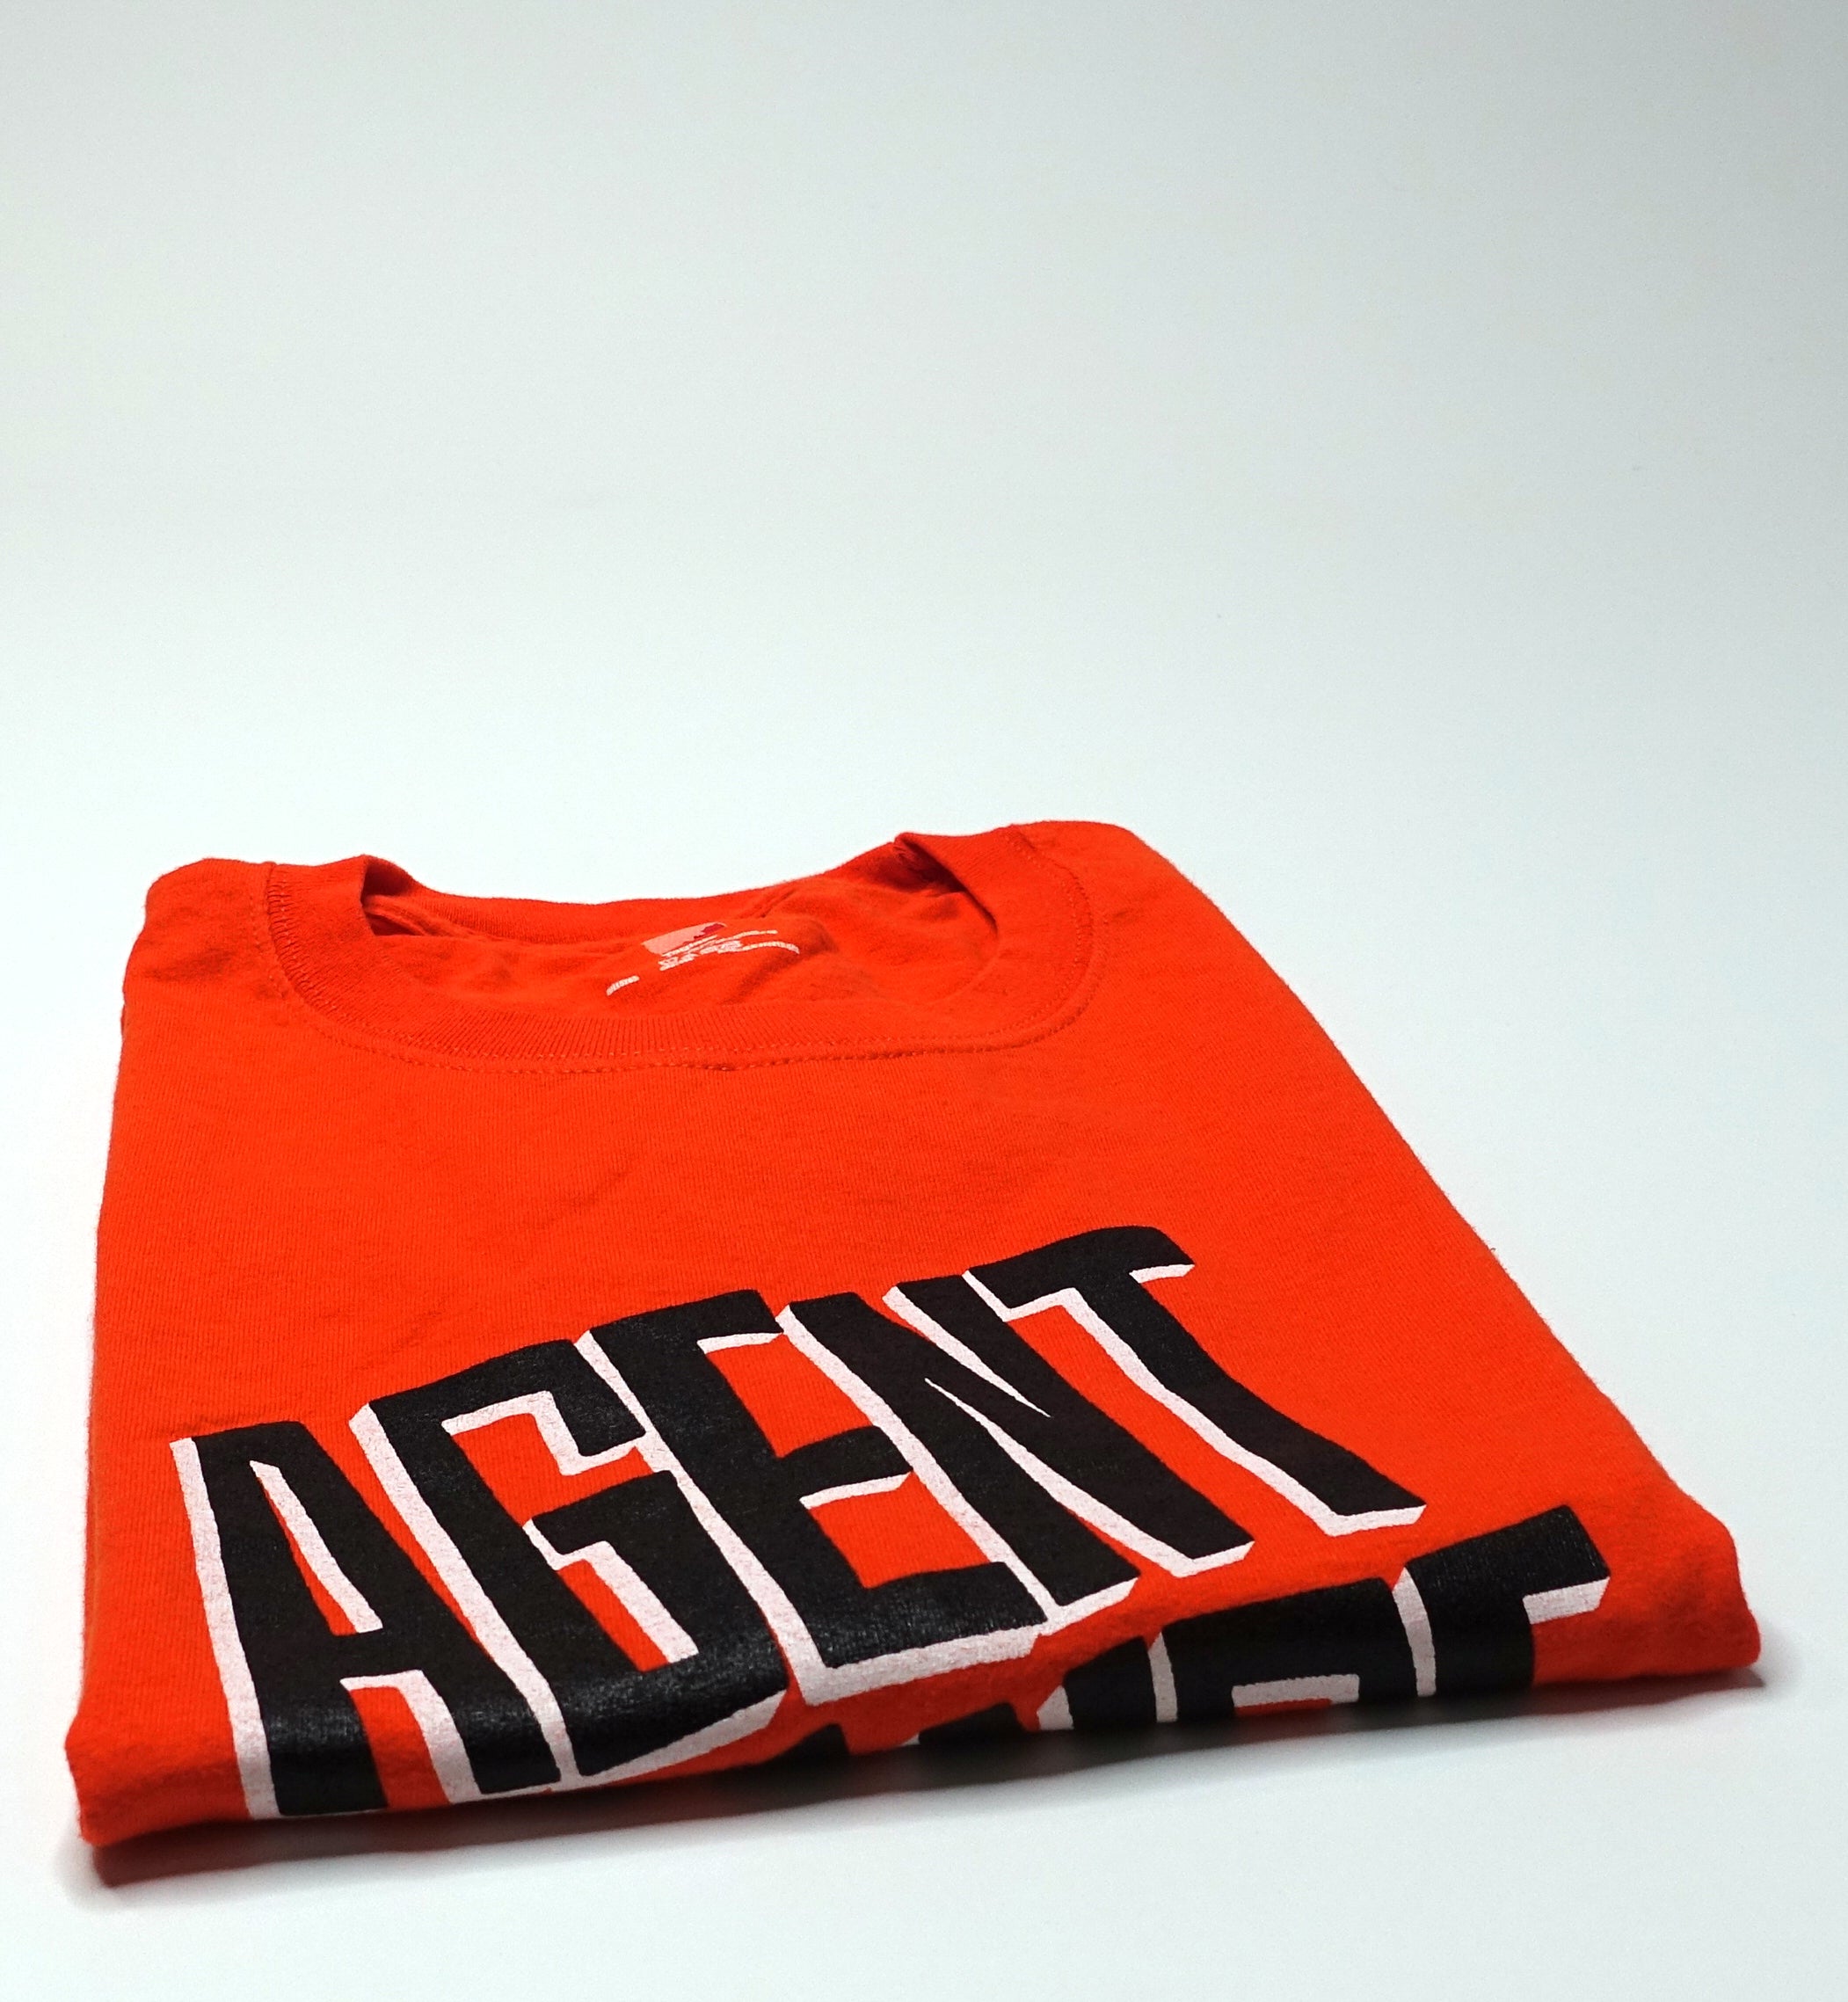 Agent Orange - Crooked Logo 00's Shirt Size Large